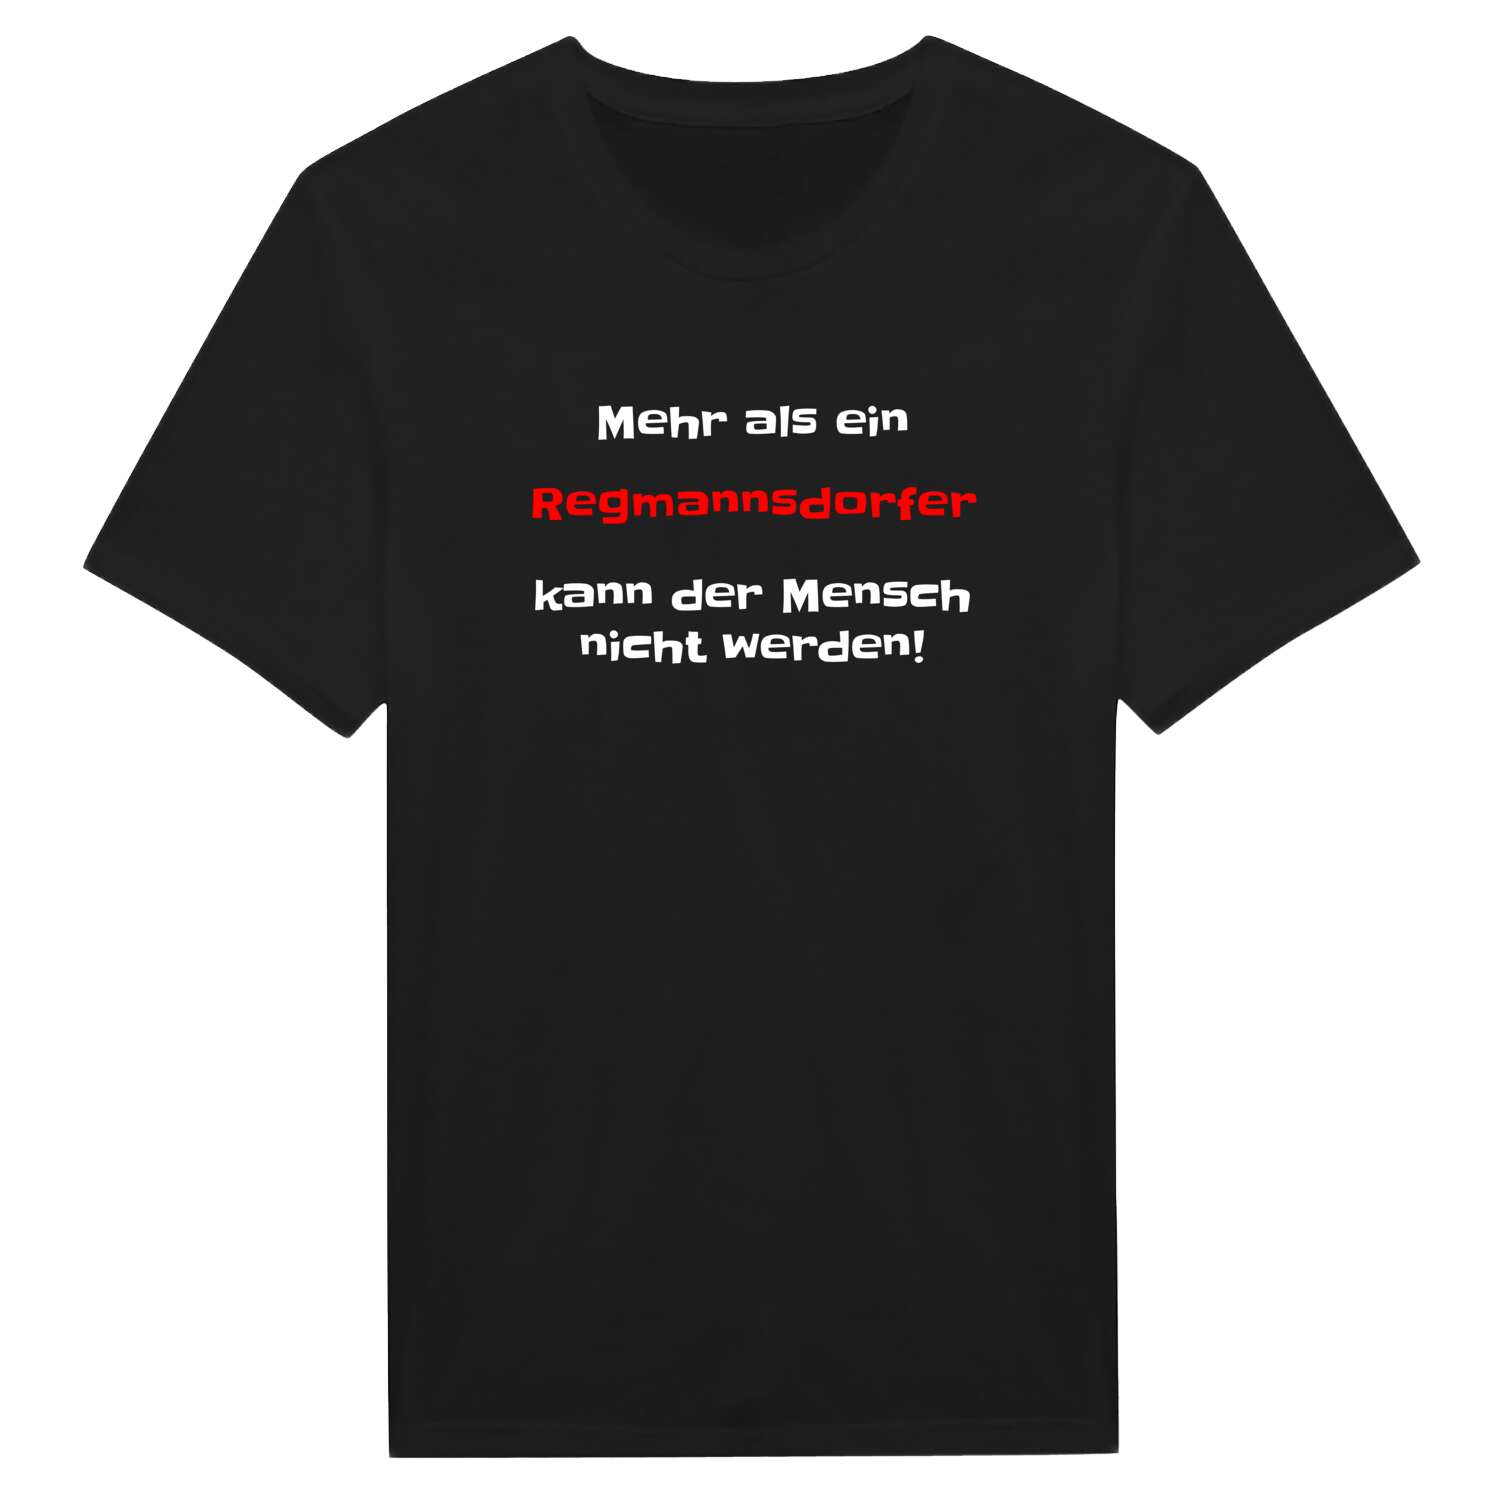 Regmannsdorf T-Shirt »Mehr als ein«